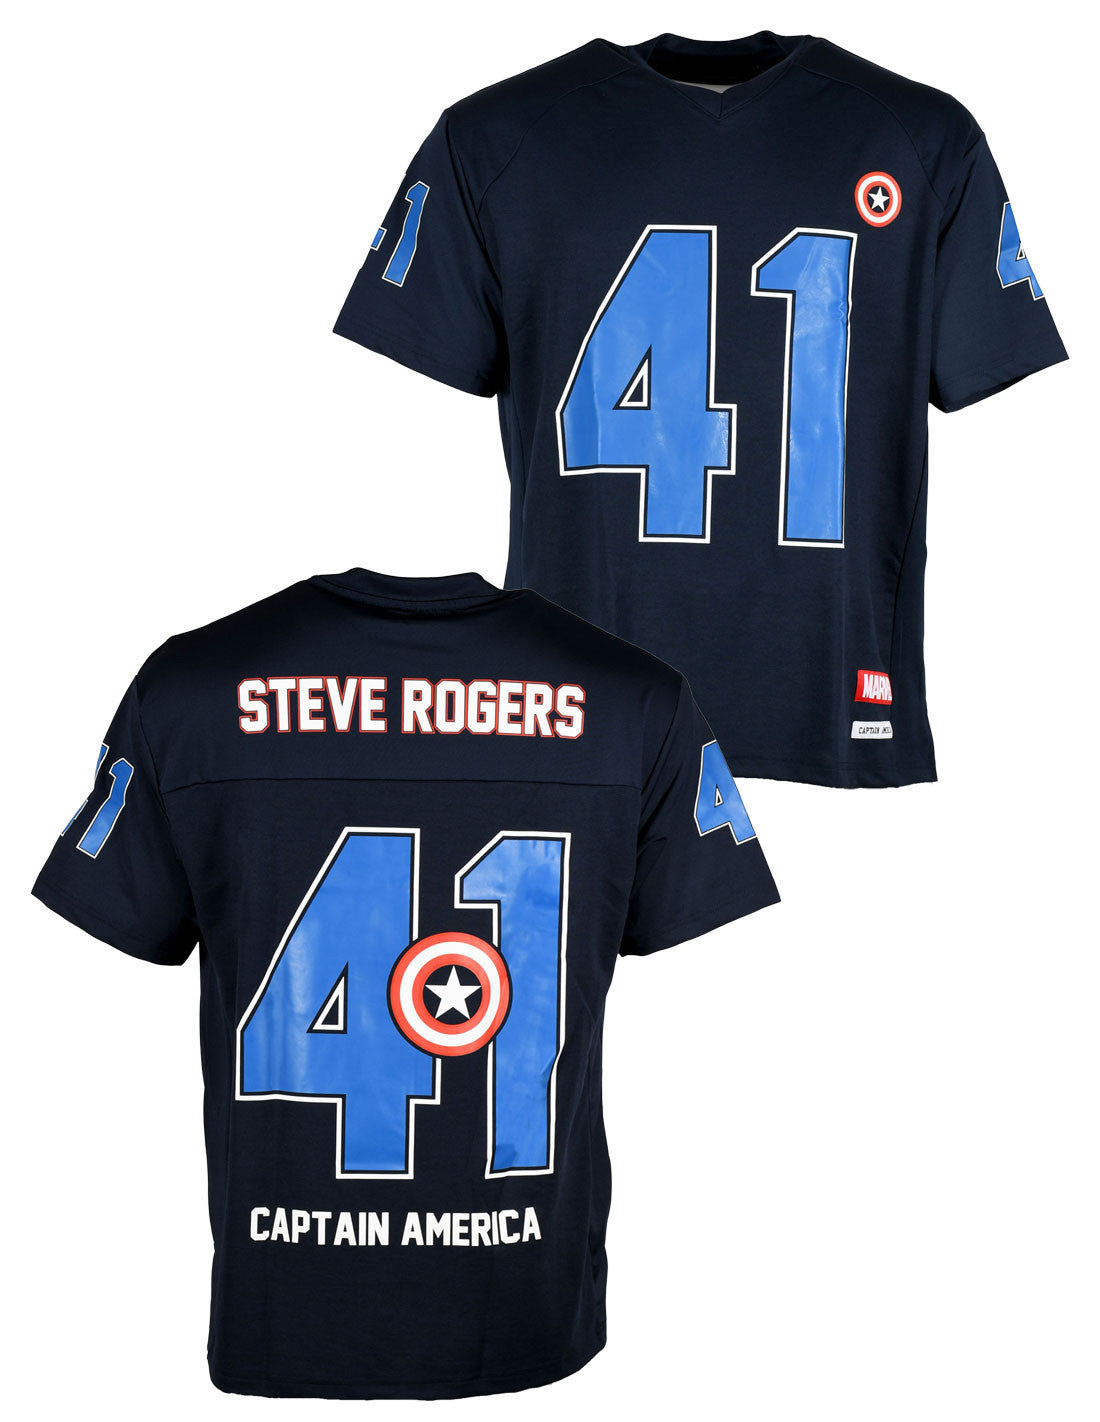 T-shirt Sport Captain America Marvel - Steve Rogers 41